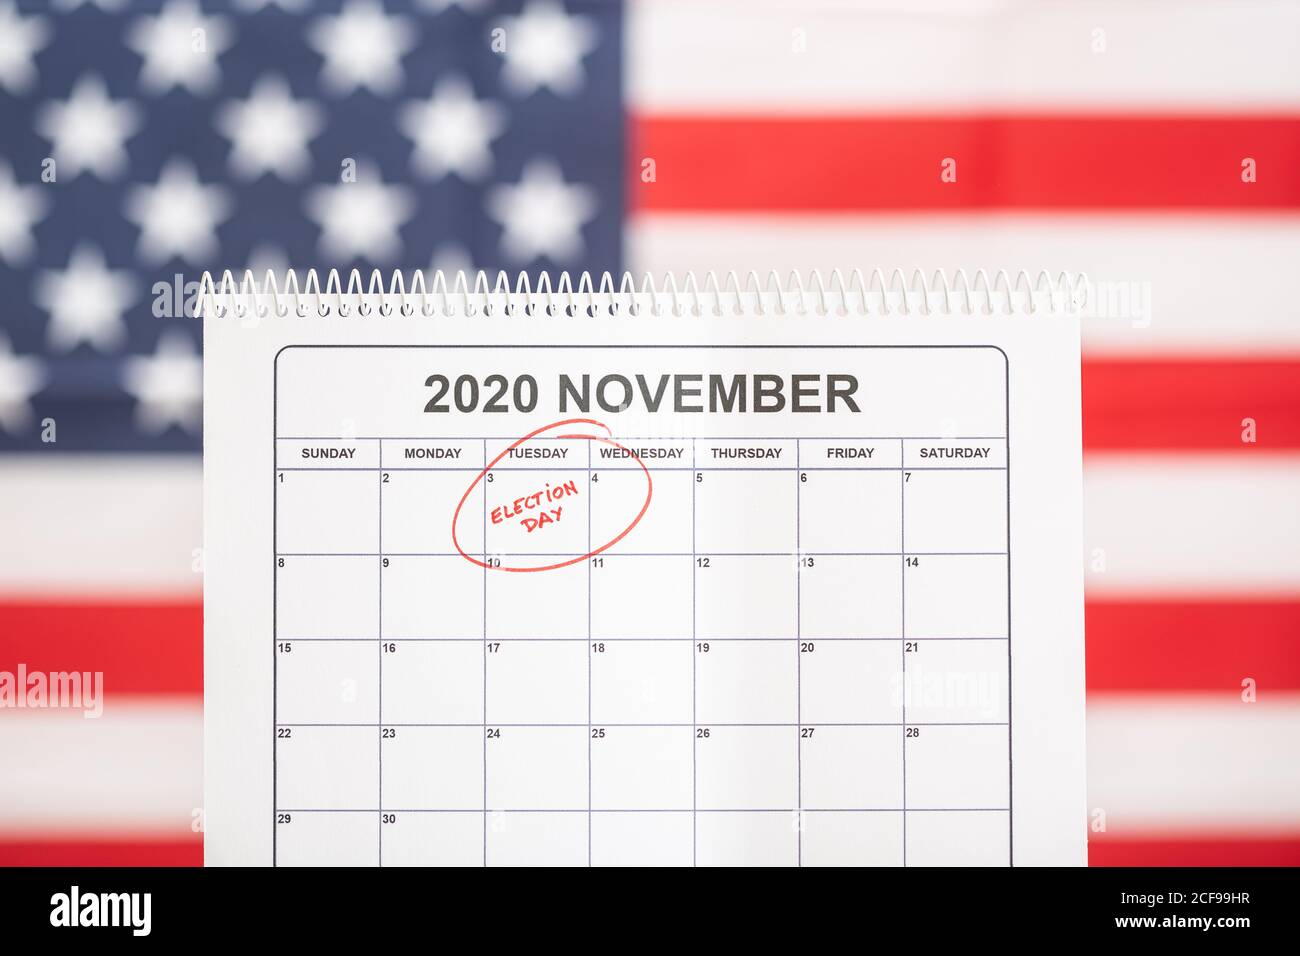 3. November 2020 Wahltag Konzept. Tischkalender mit dem 3. November in rot und USA Flagge im Hintergrund markiert Stockfoto